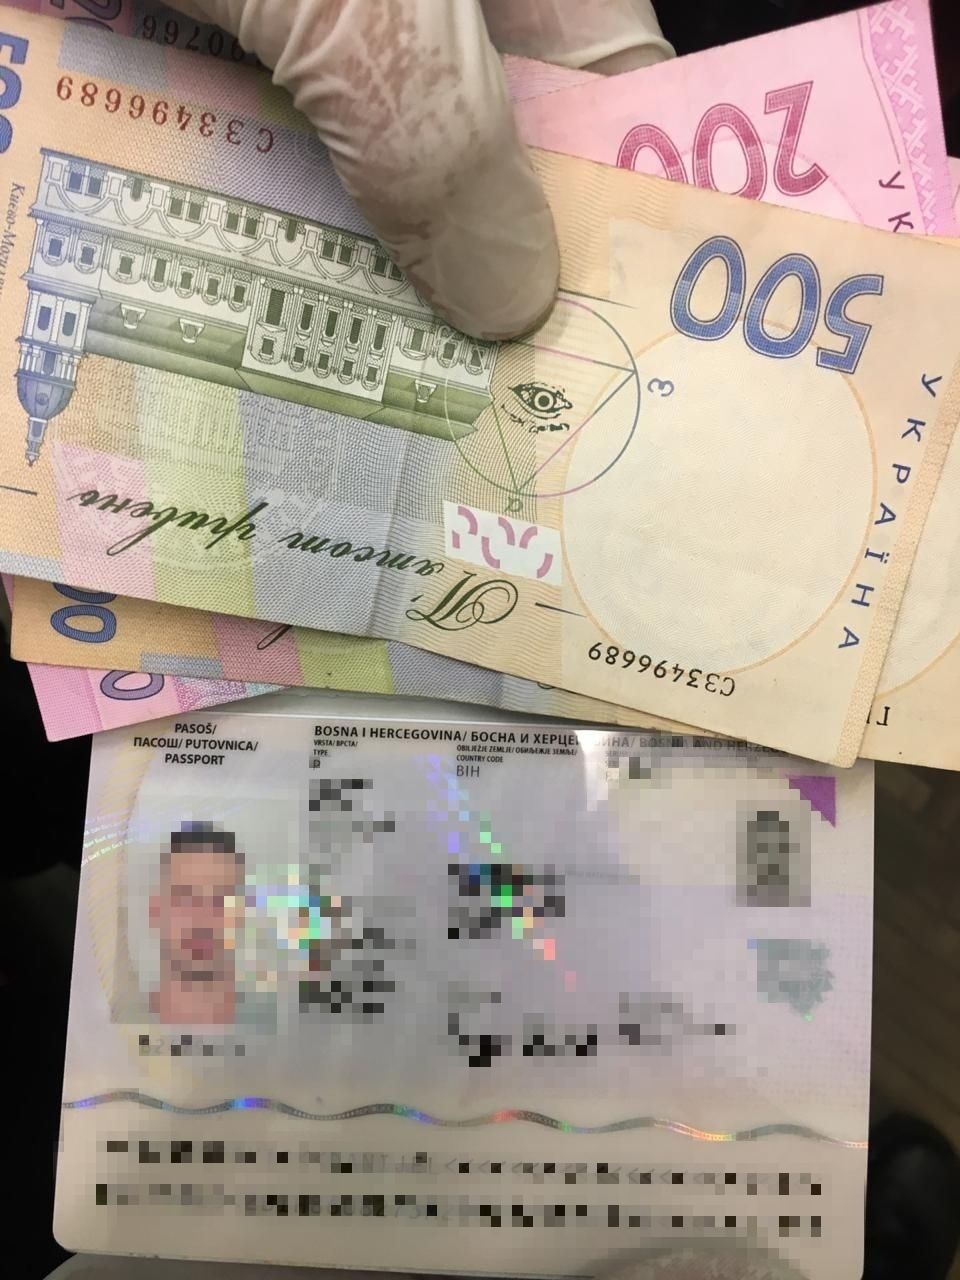 Іноземець, їдучи з України, намагався "відкупитися" на кордоні від поглибленого огляду за 1400 грн  